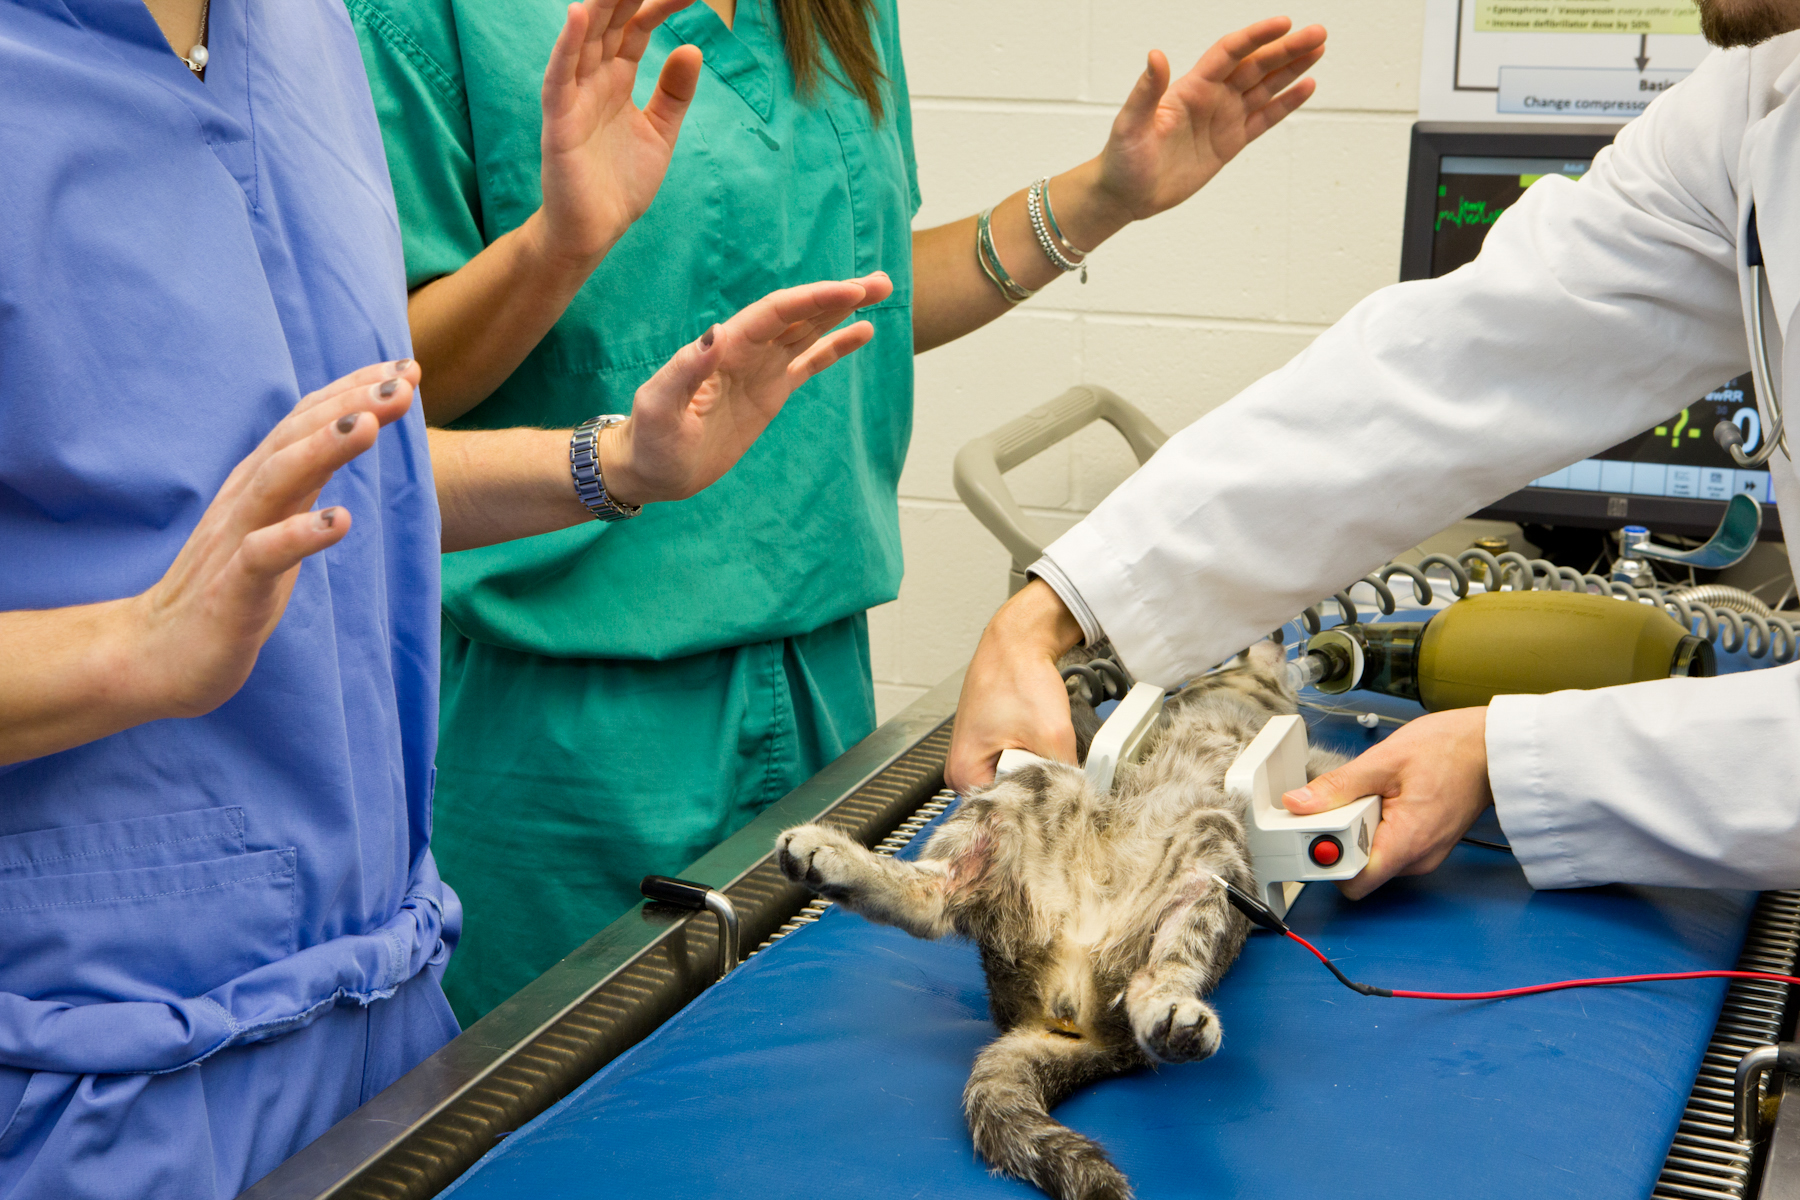 vets using defibrillator on cat